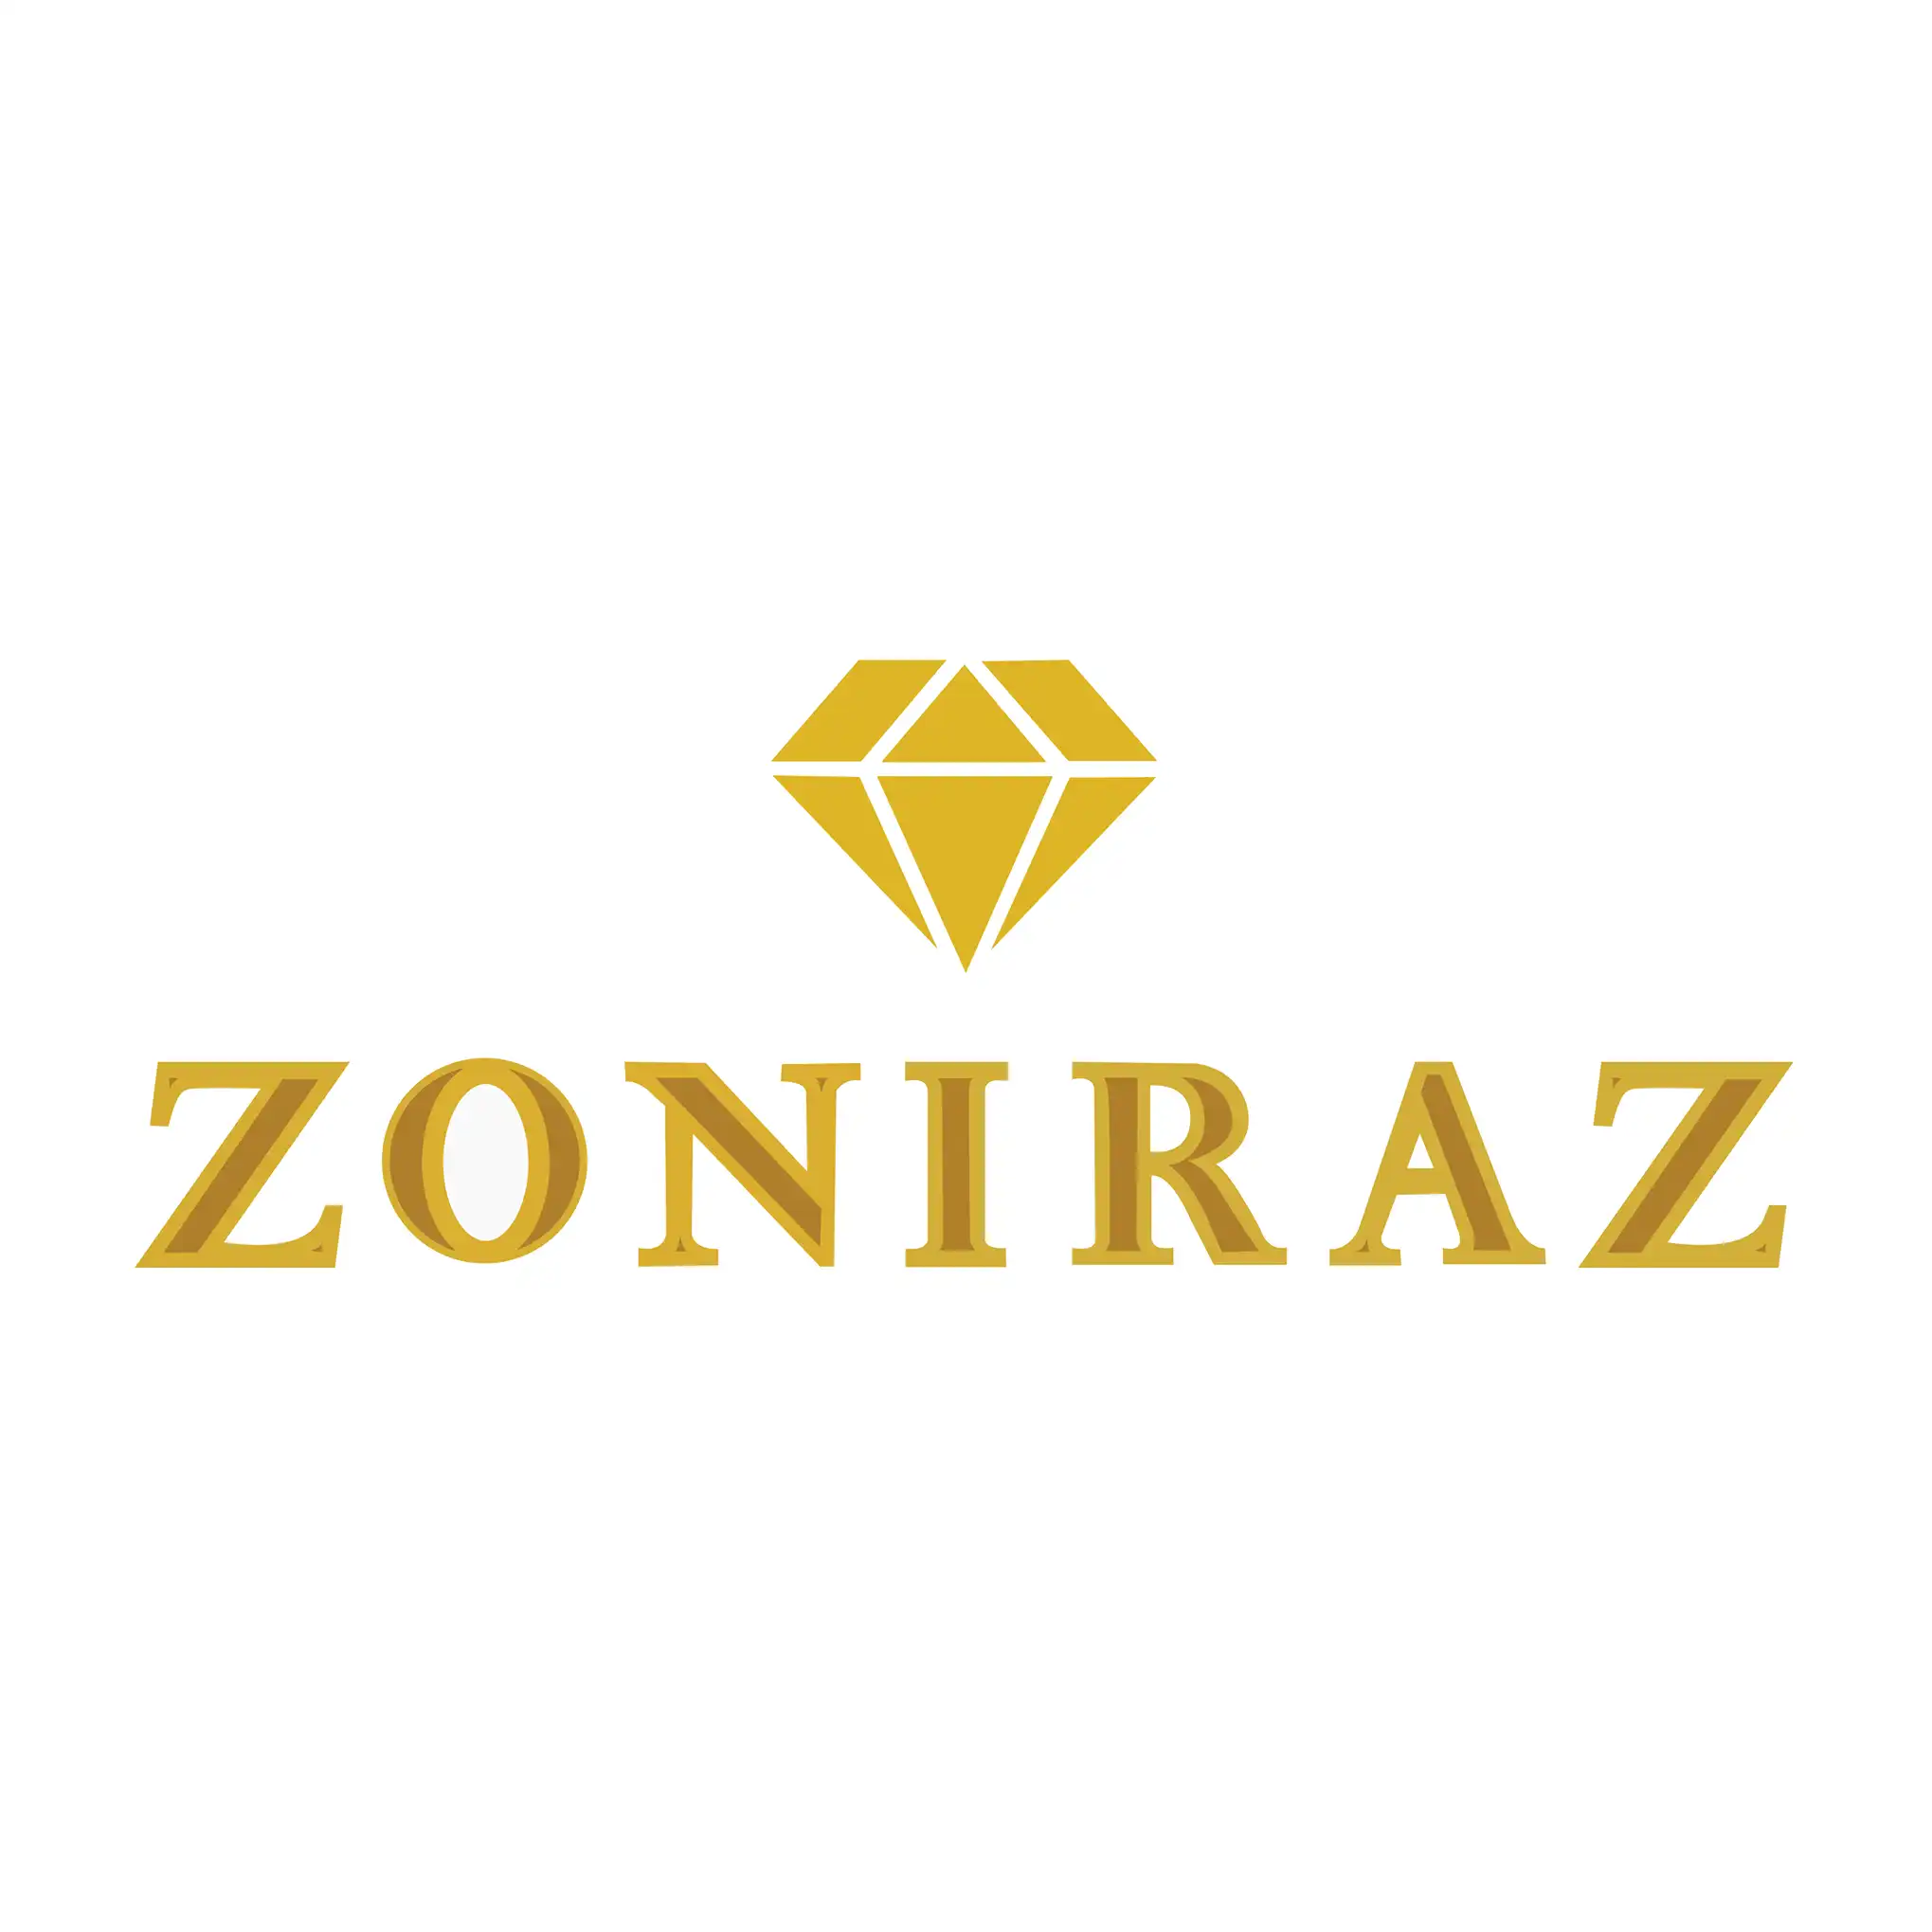 Zoniraz